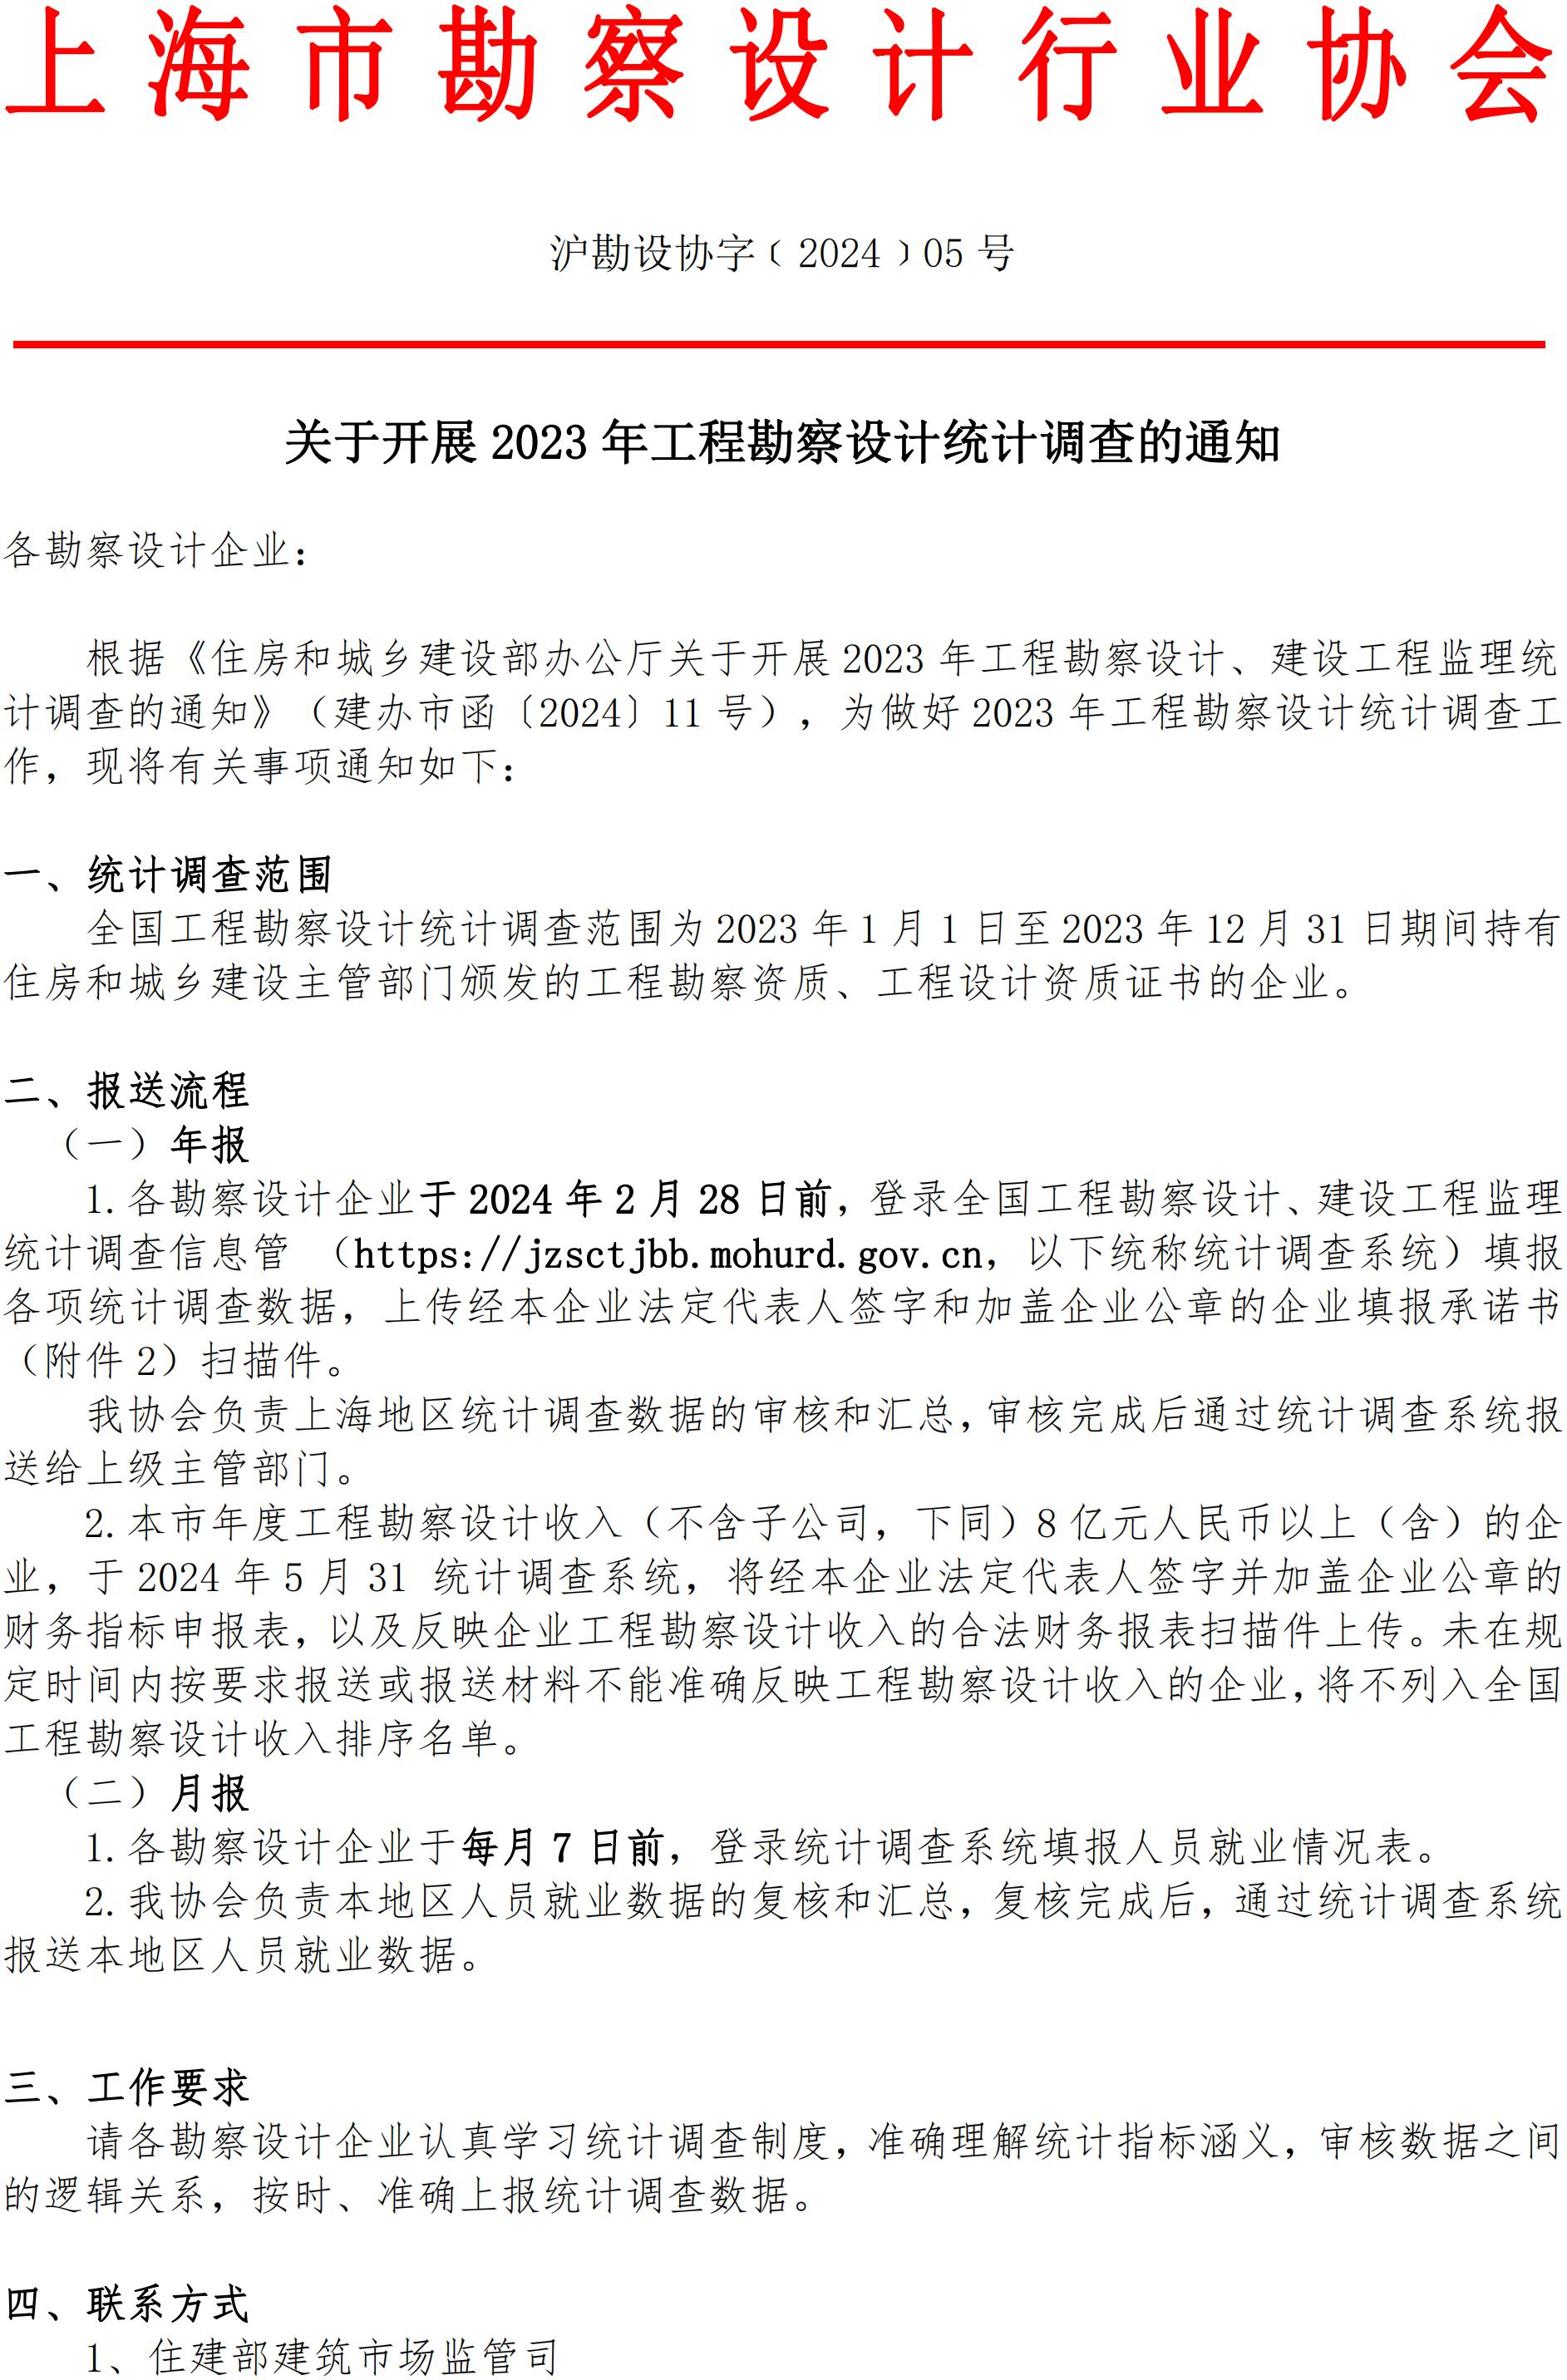 2023年上海市勘察设计统计年报通知(3)_00.jpg